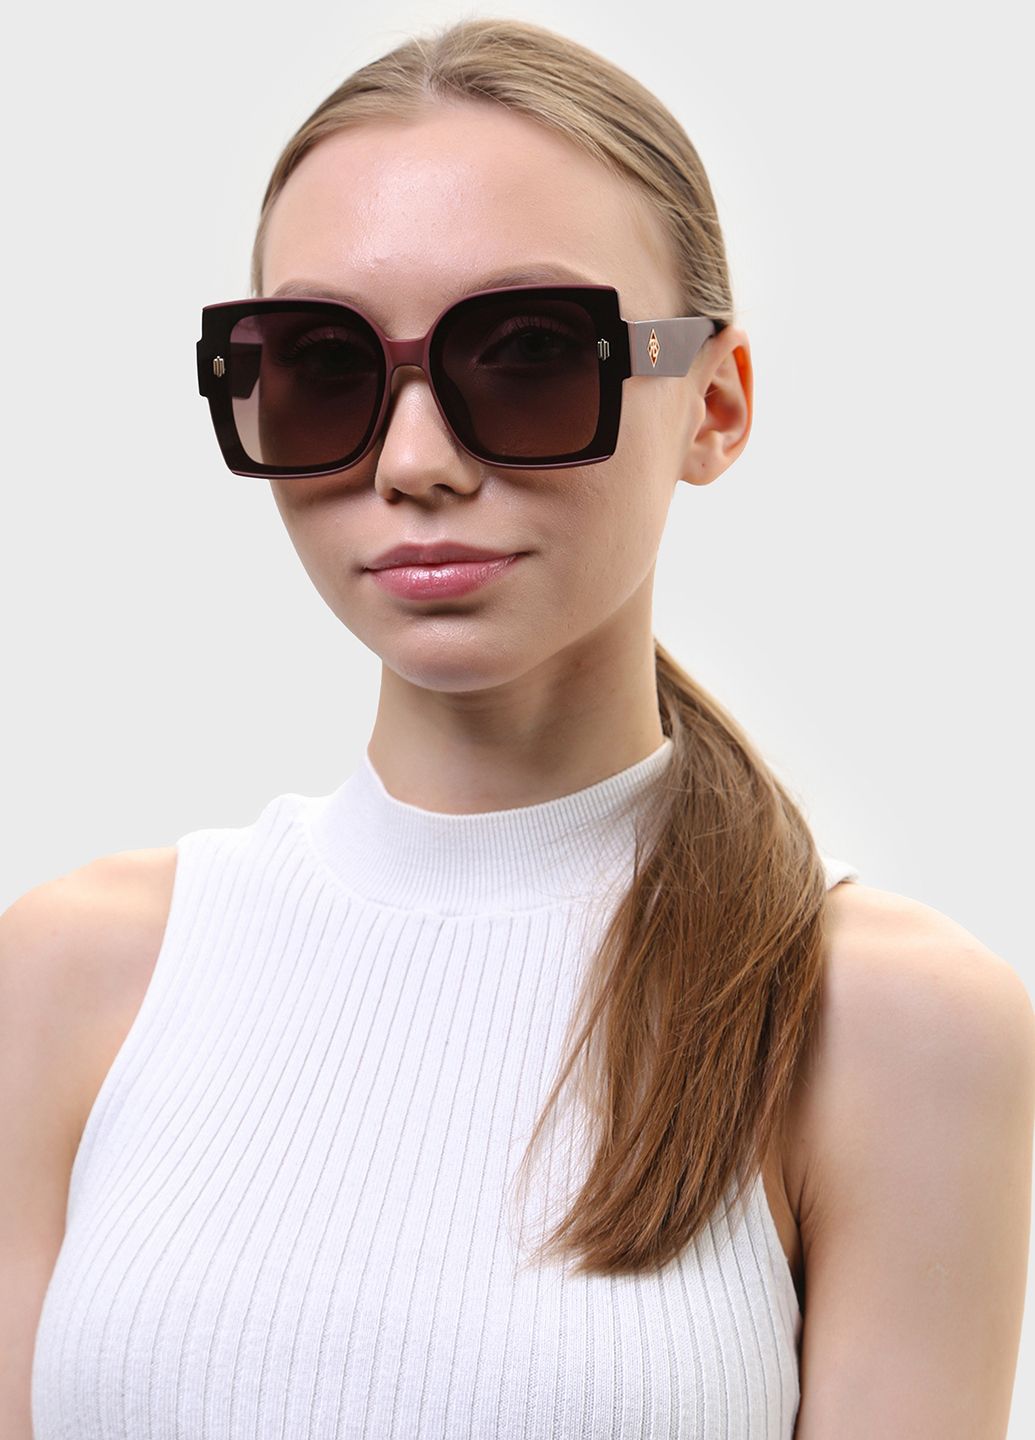 Купить Женские солнцезащитные очки Rita Bradley с поляризацией RB726 112053 в интернет-магазине